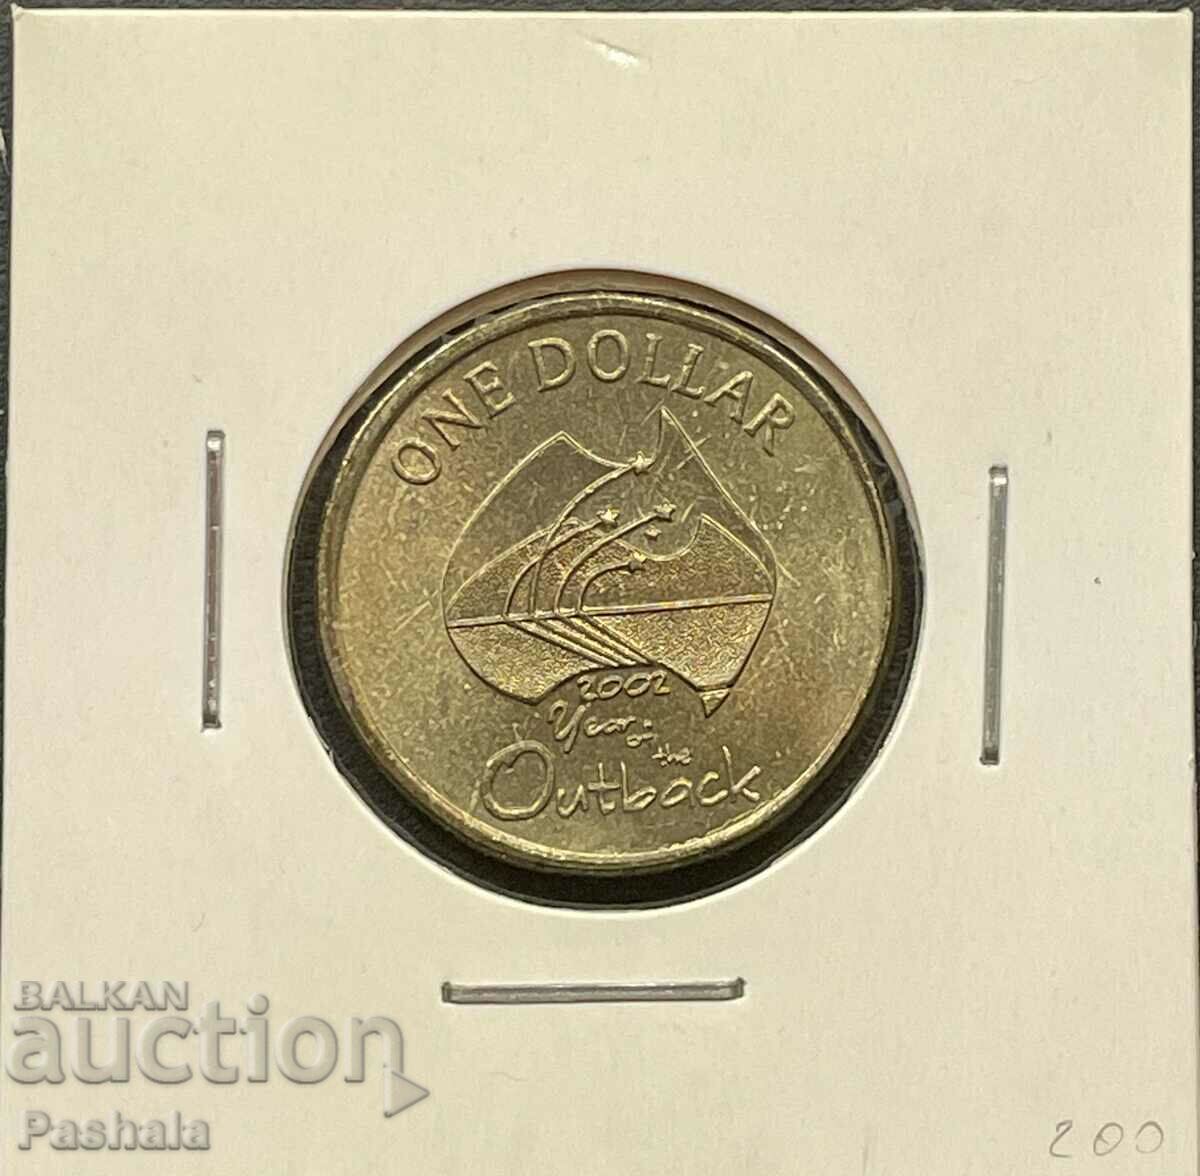 Australia $1 2002